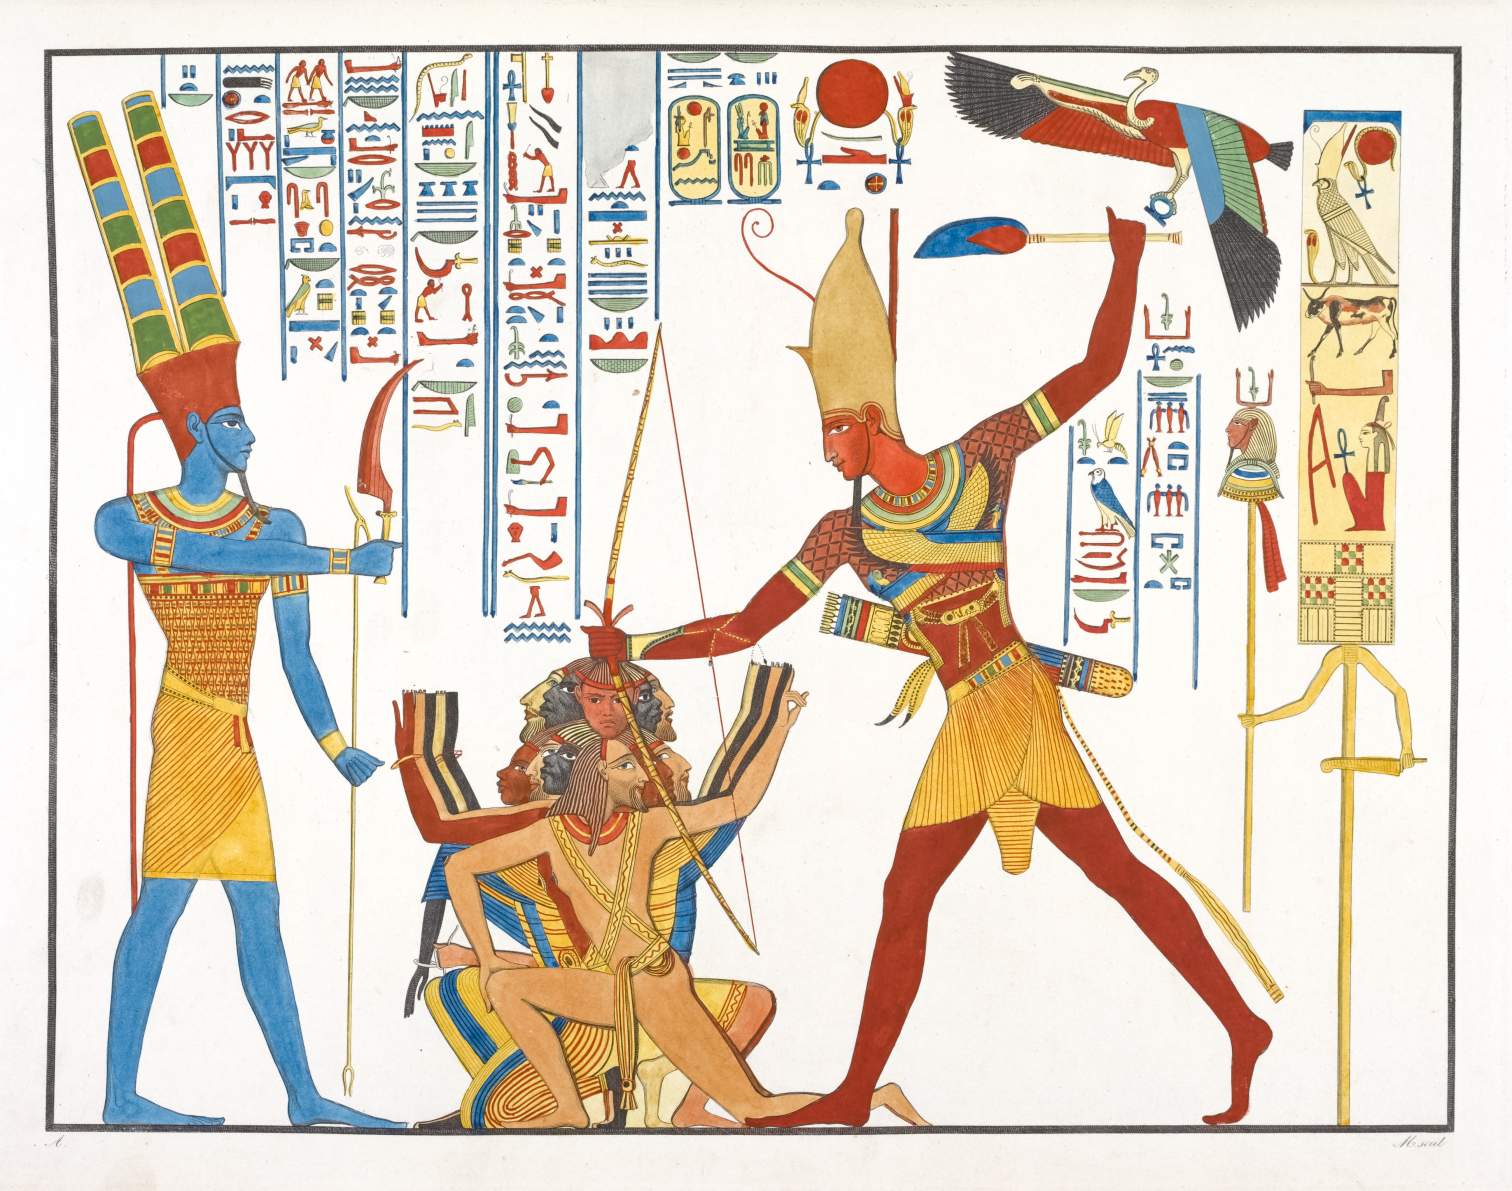 मिस्र की कला में दुश्मनों को मारने के लिए खोपेश चलाना। © विकिमीडिया कॉमन्स